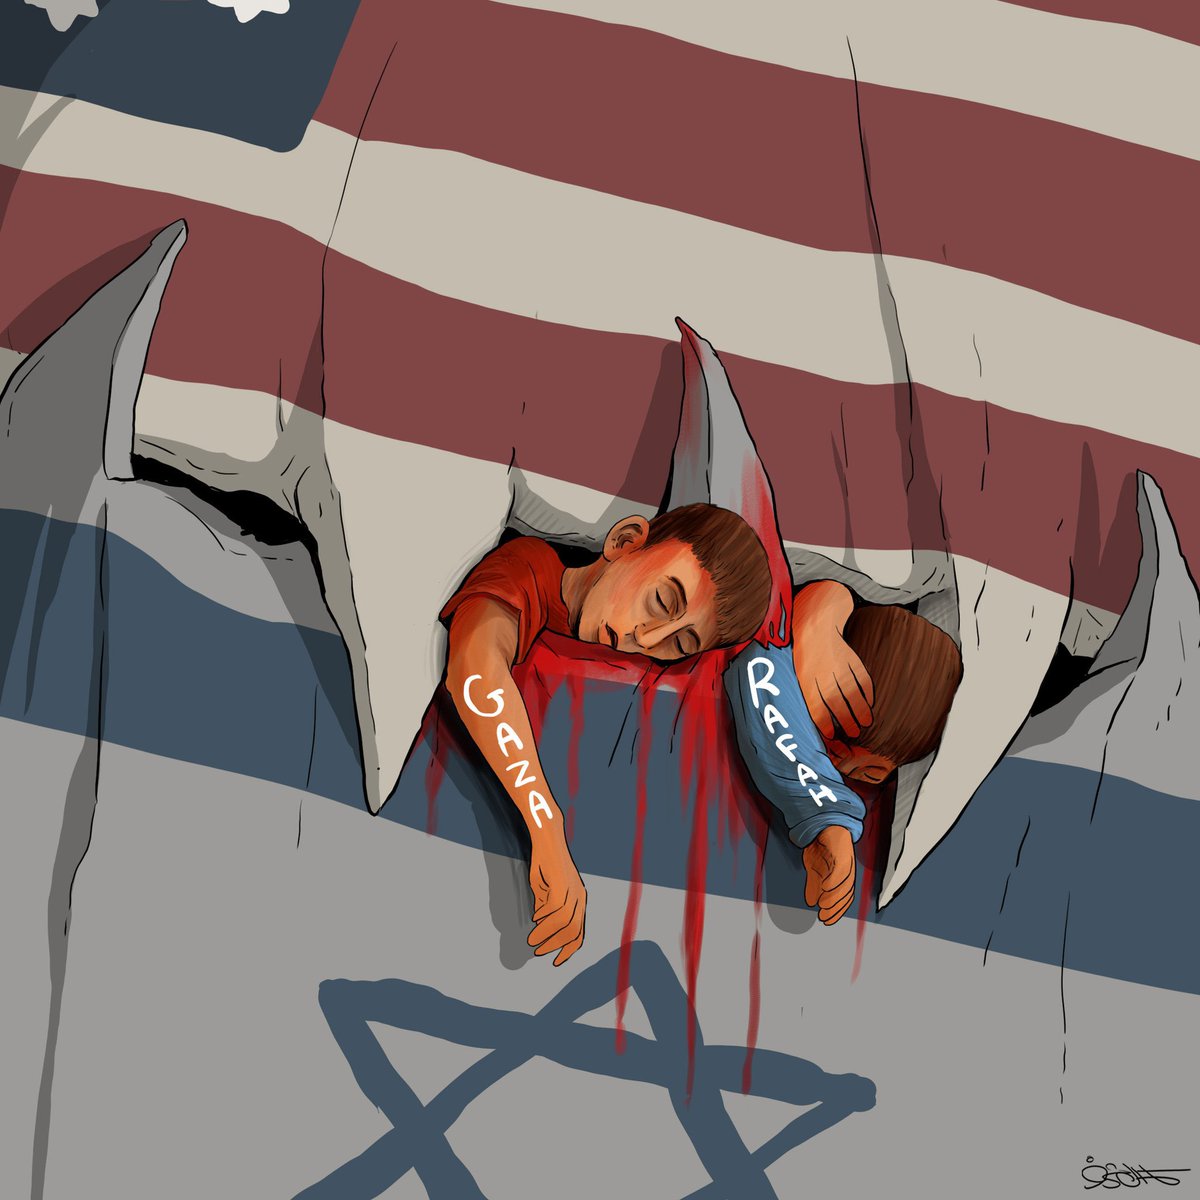 Karikatür dilinden hakikat: 

'Gazzeli çocuklar'

 #GazaGenocide